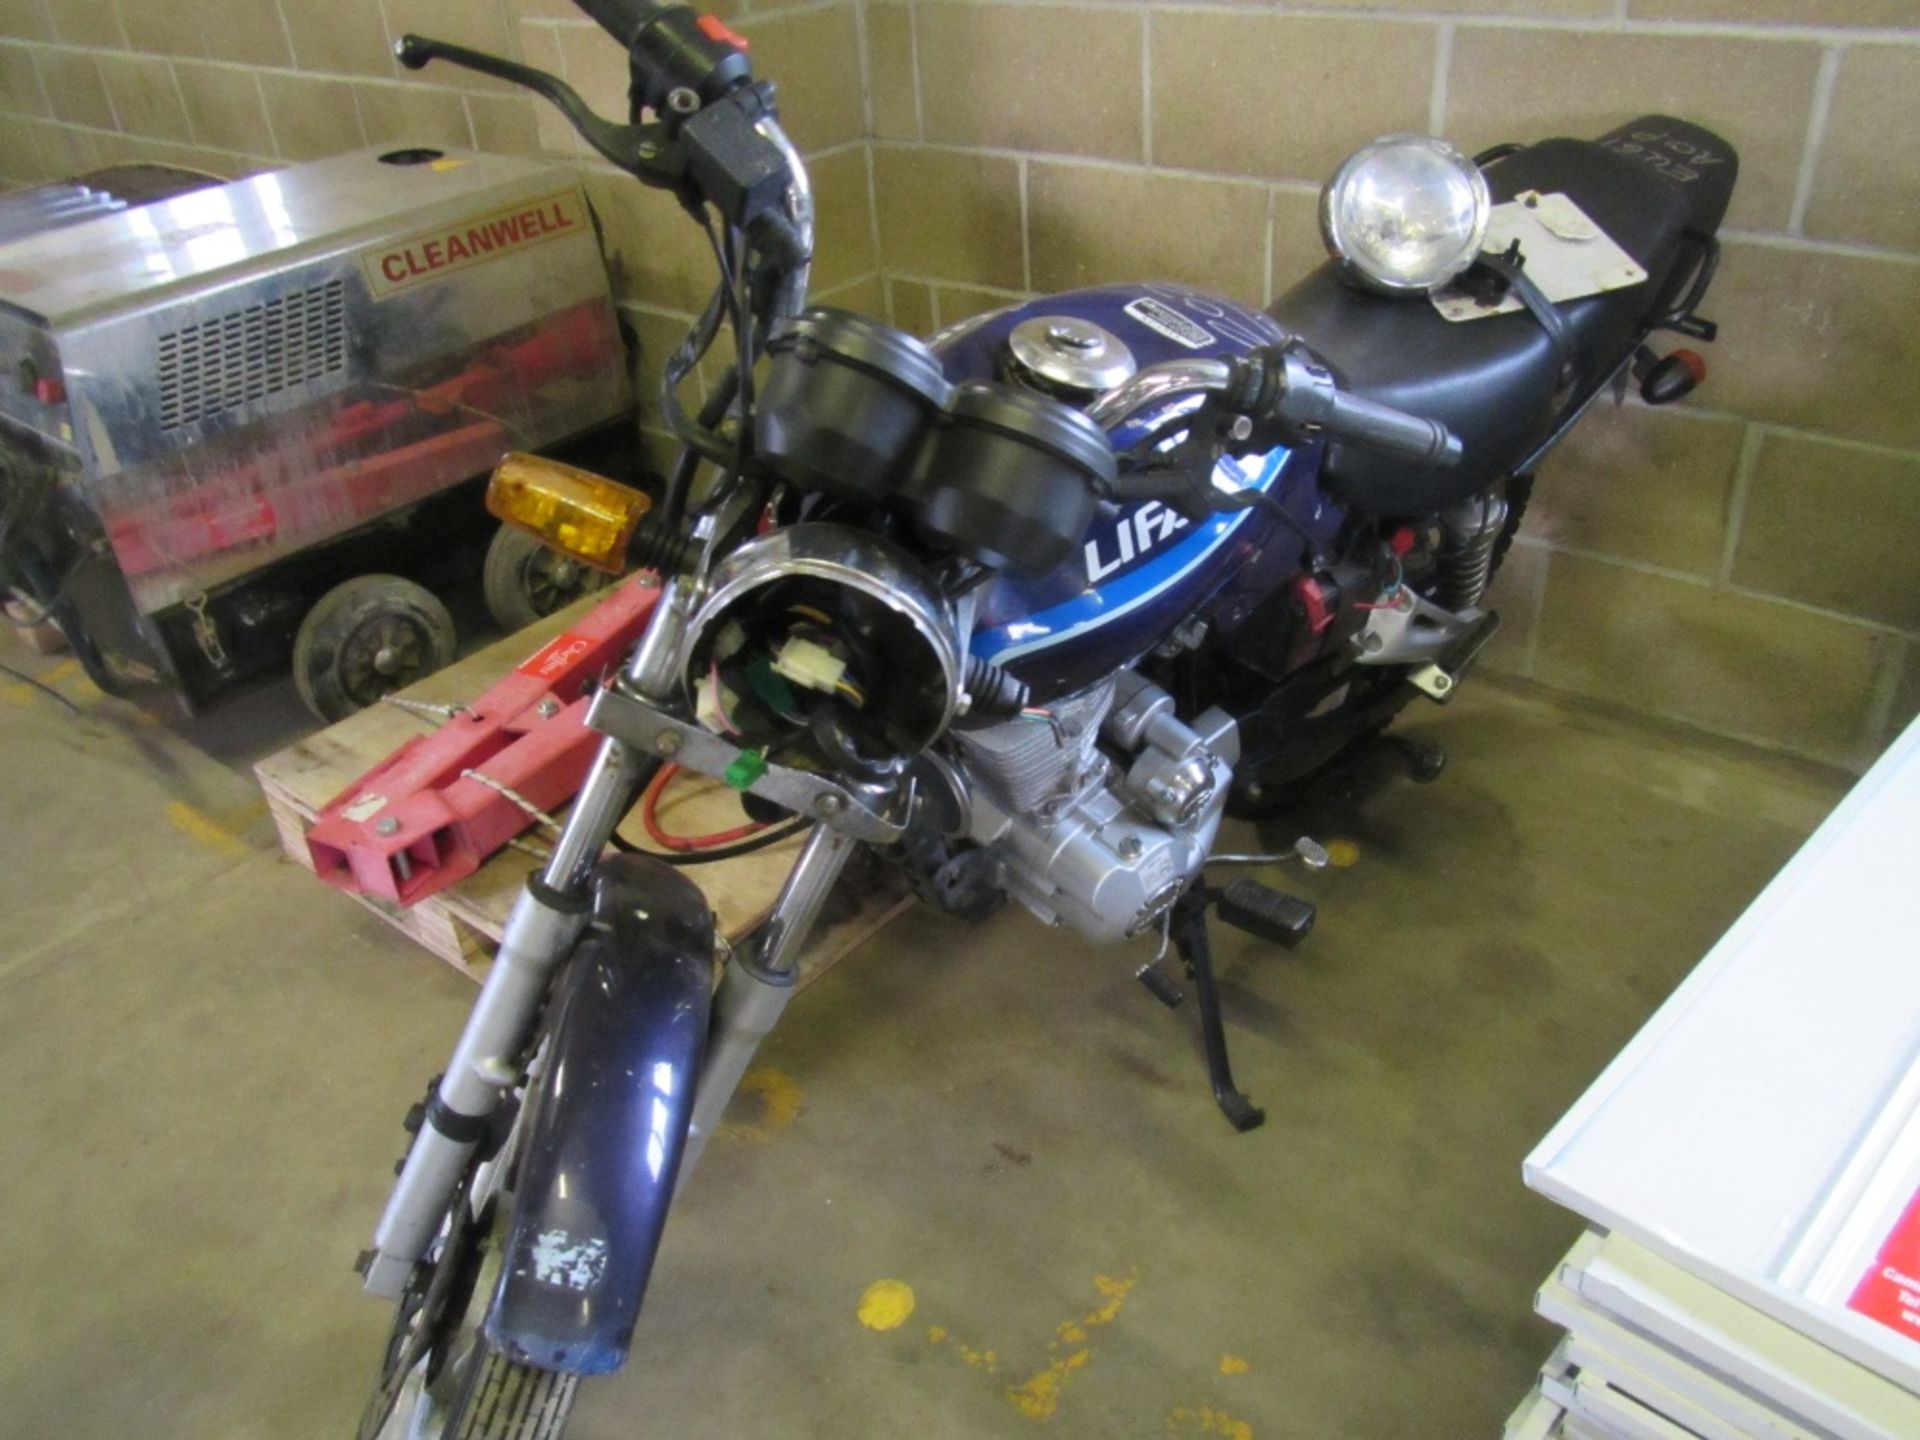 125cc Motorbike. Reg. No. EU61 AOP